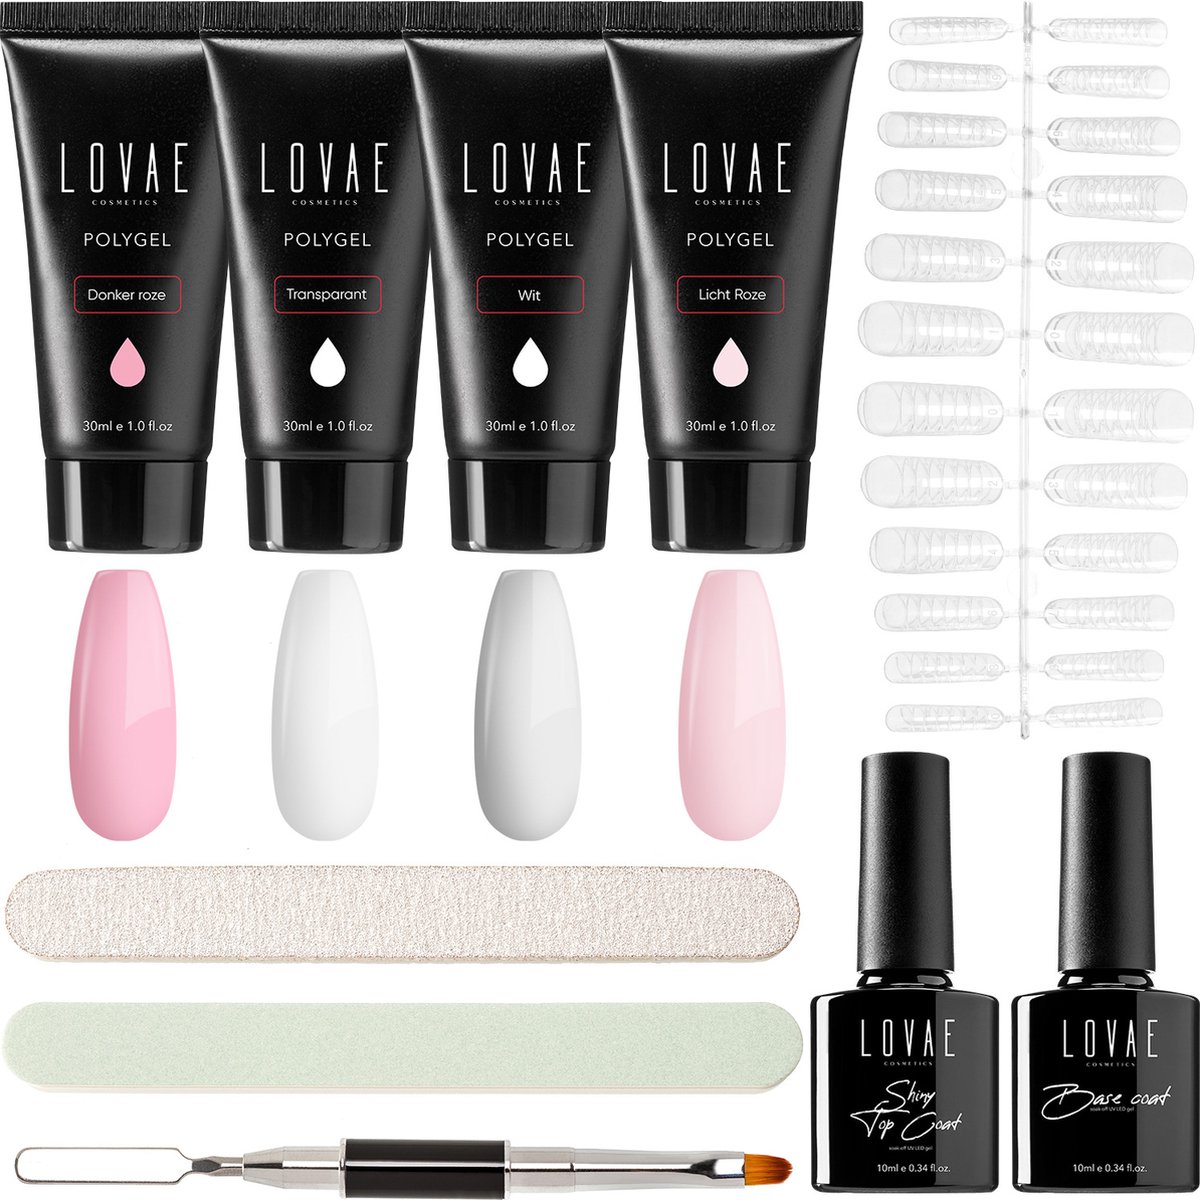 Lovae Cosmetics Polygel - Polygel Kit - Nagels Starterspakket - Nageltips - Builder gel - Set van 4 kleuren - 4 x 30 gr - Lovae Cosmetics